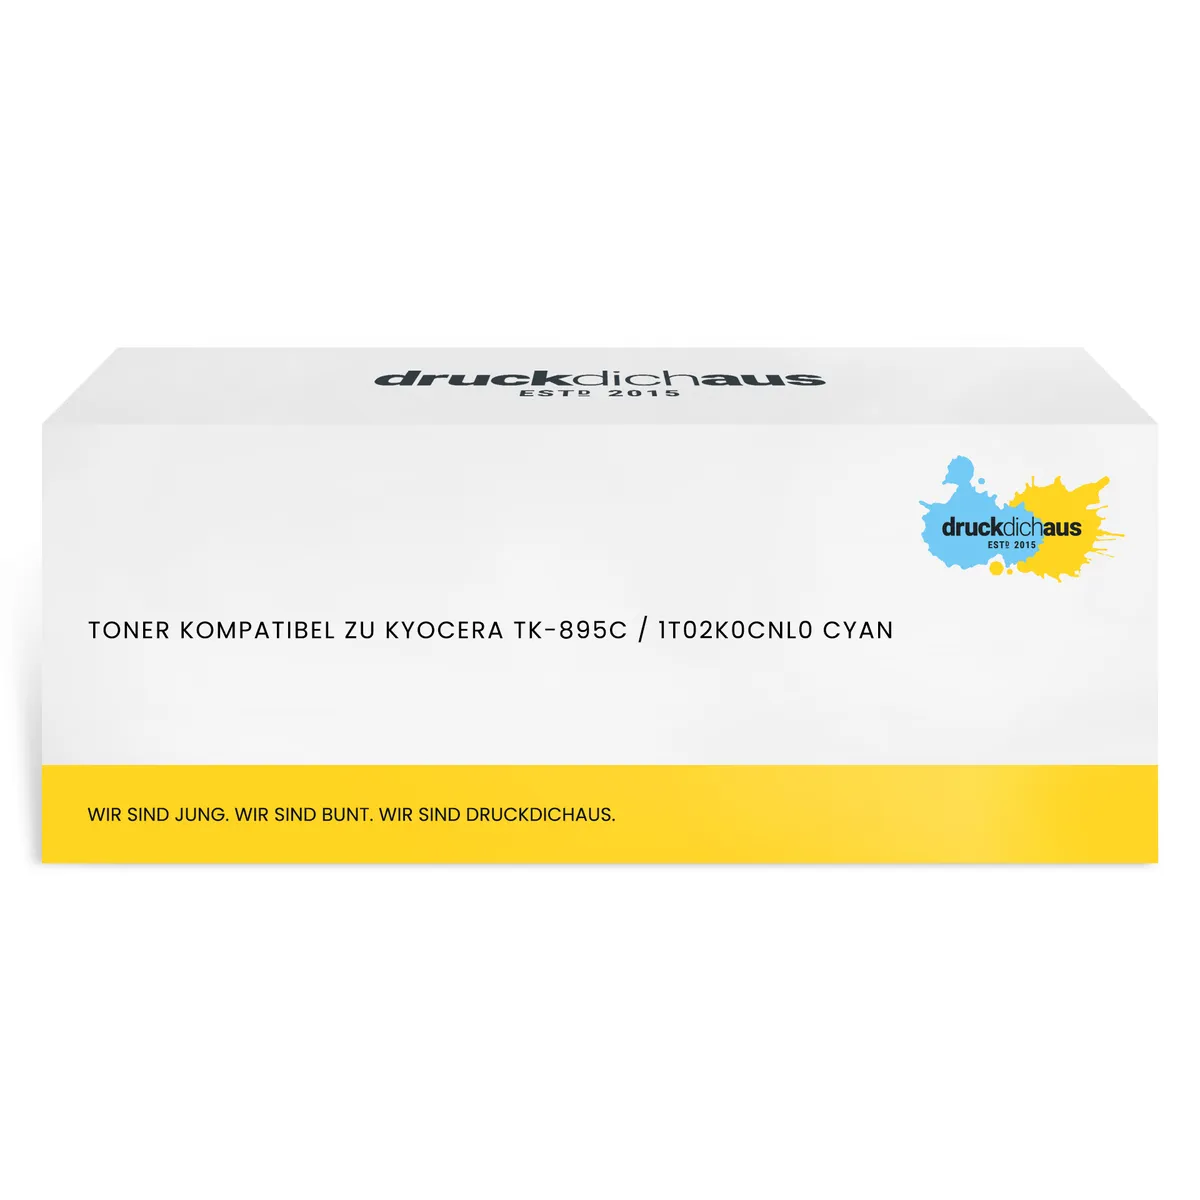 Toner kompatibel zu Kyocera TK-895C / 1T02K0CNL0 cyan